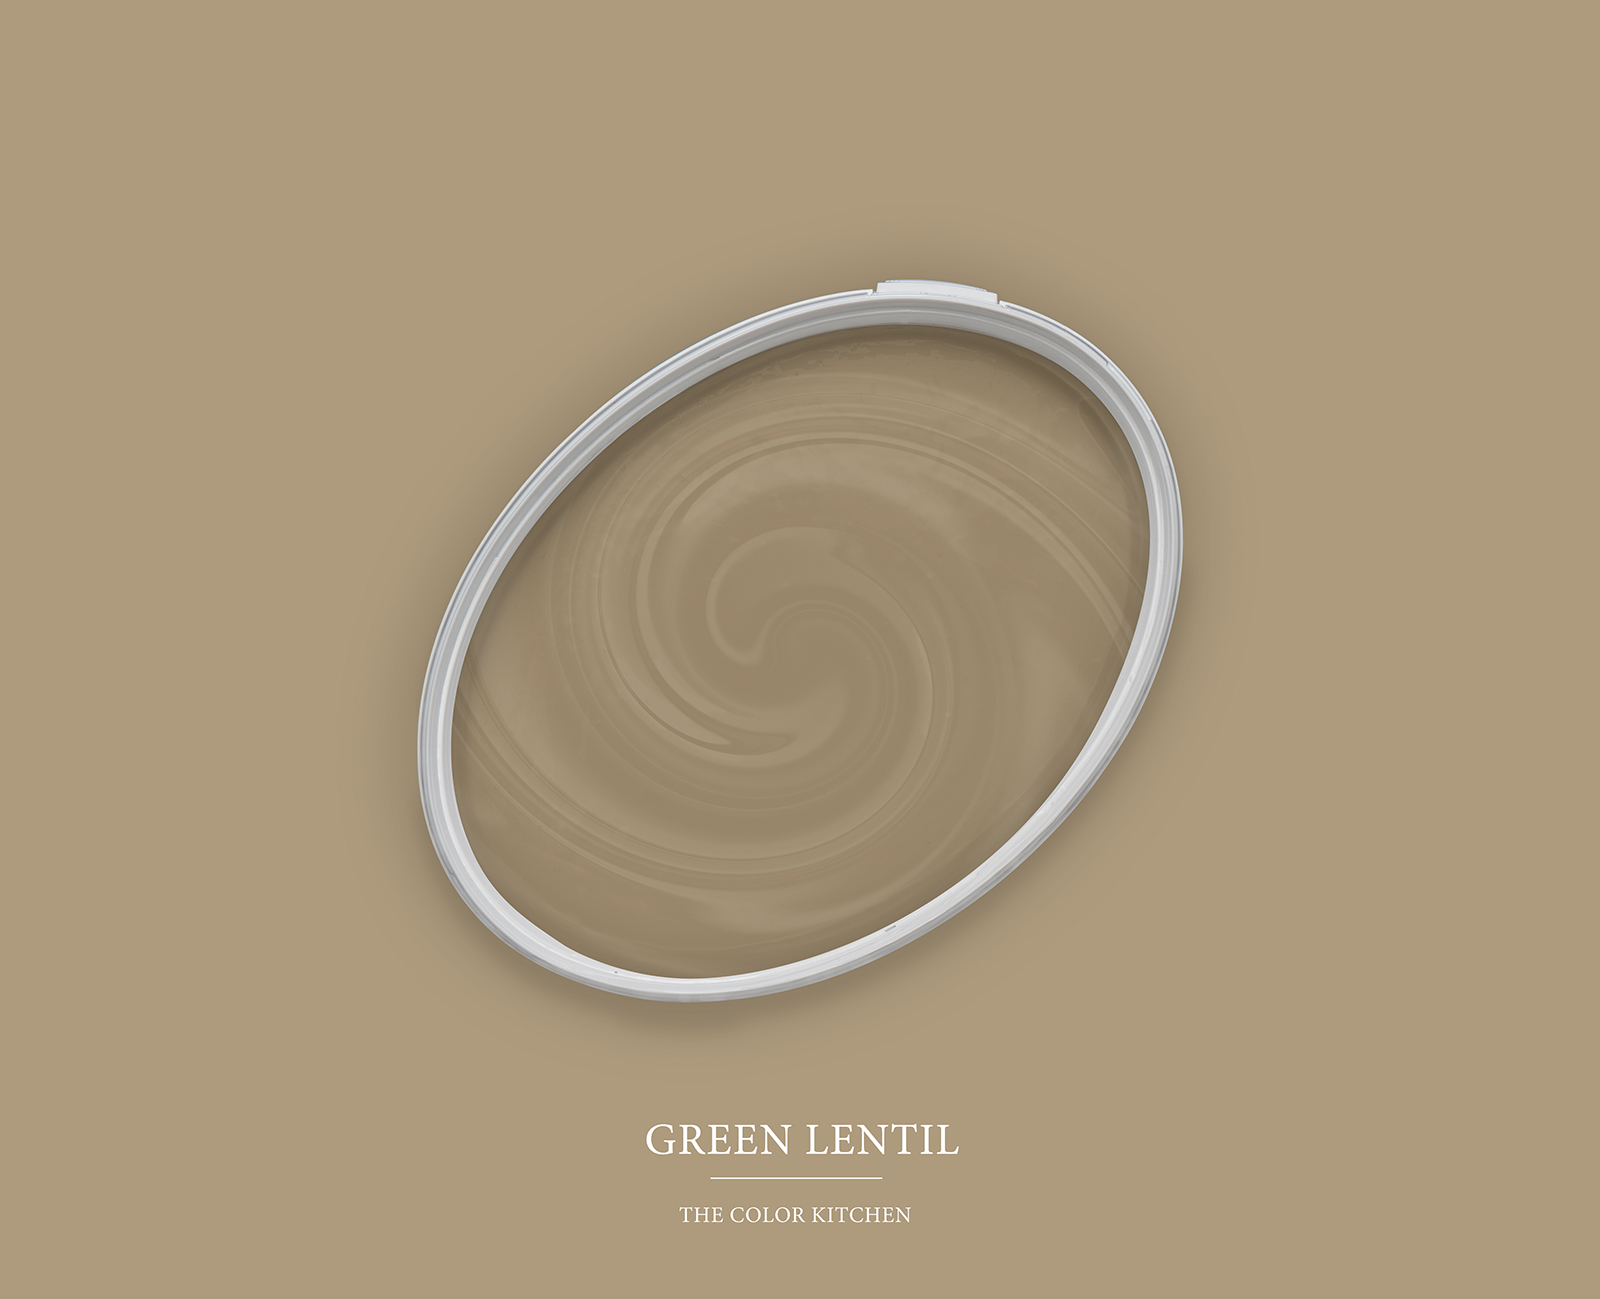         Wall Paint TCK6001 »Green Lentil« in earthy khaki – 2.5 litre
    